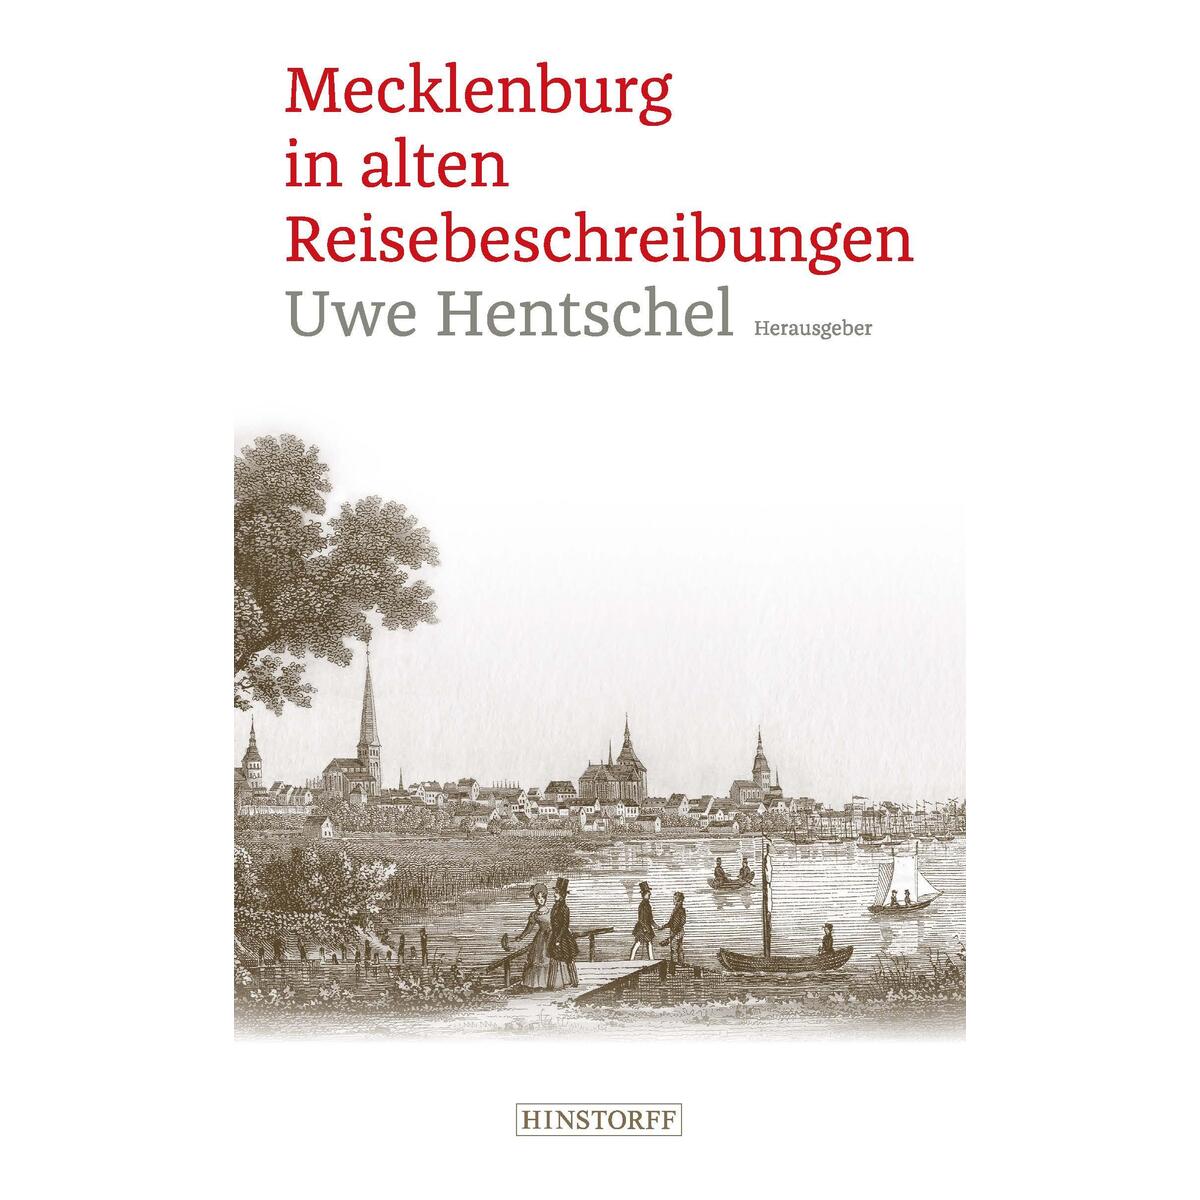 Mecklenburg in alten Reisebeschreibungen von Hinstorff Verlag GmbH